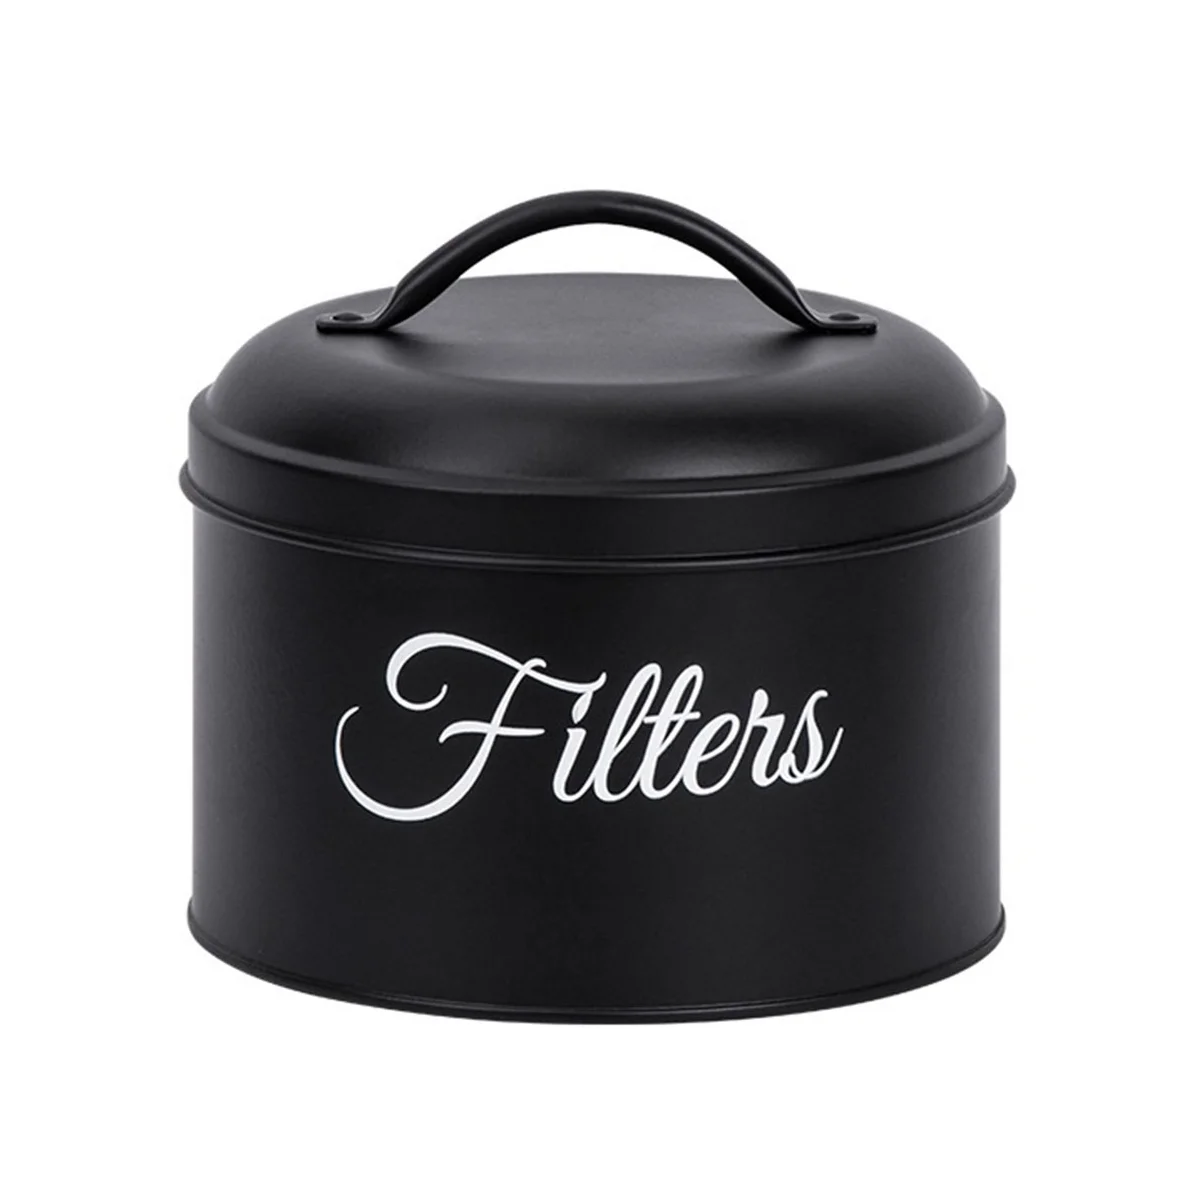 

Держатель для фильтра для кофе, корзина для хранения фильтров для кофе с крышкой, круглый контейнер для фильтров для кофе для стойки, черный